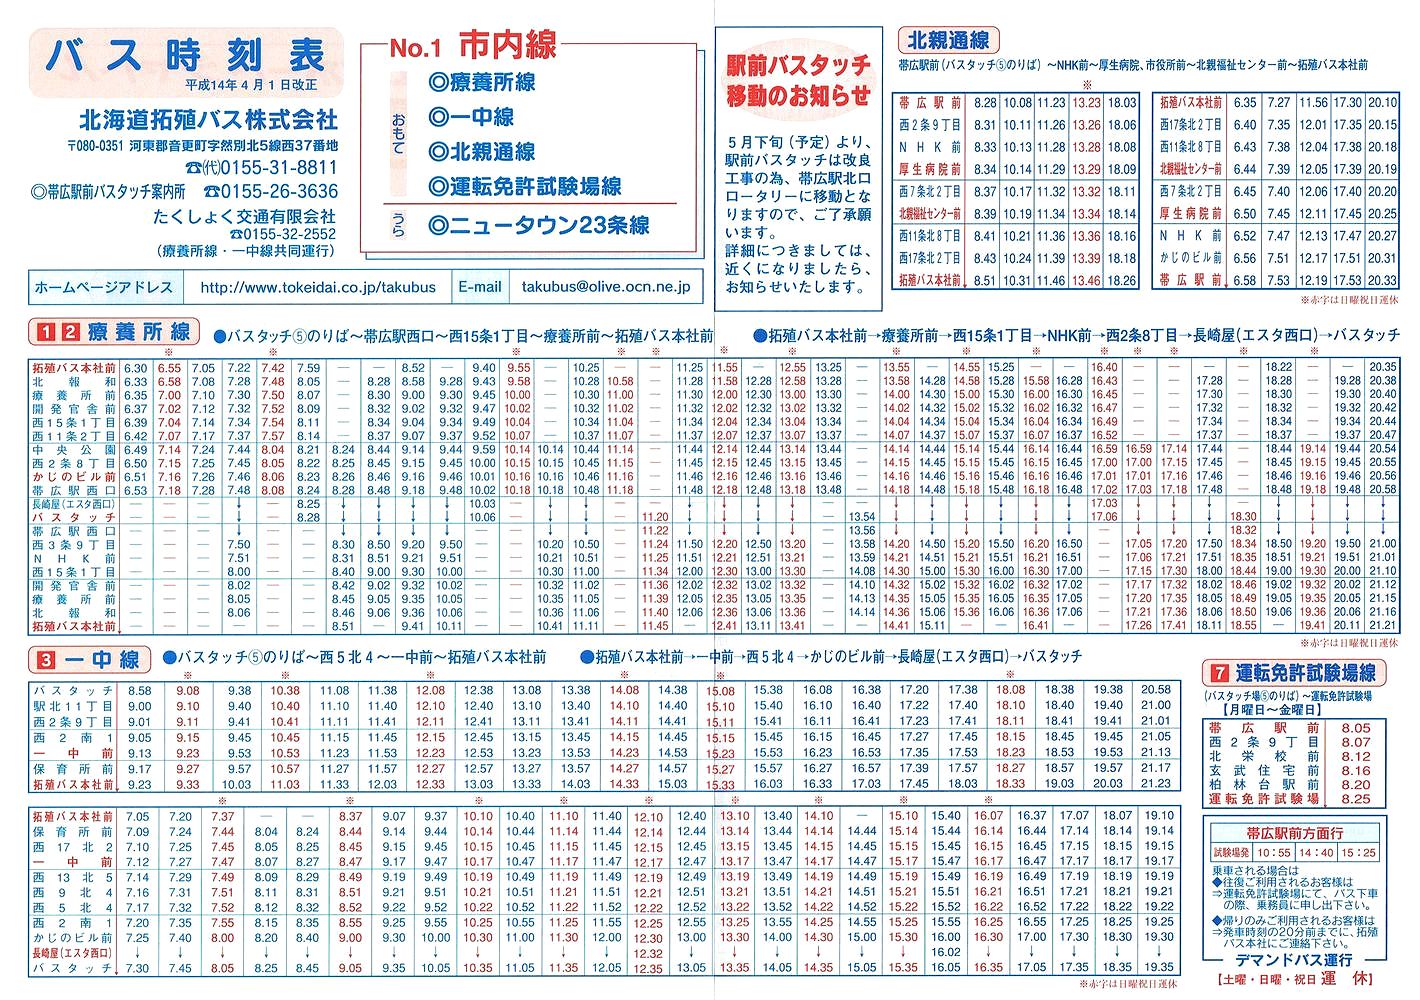 2002-04-01改正_北海道拓殖バス・たくしょく交通_時刻表１表面